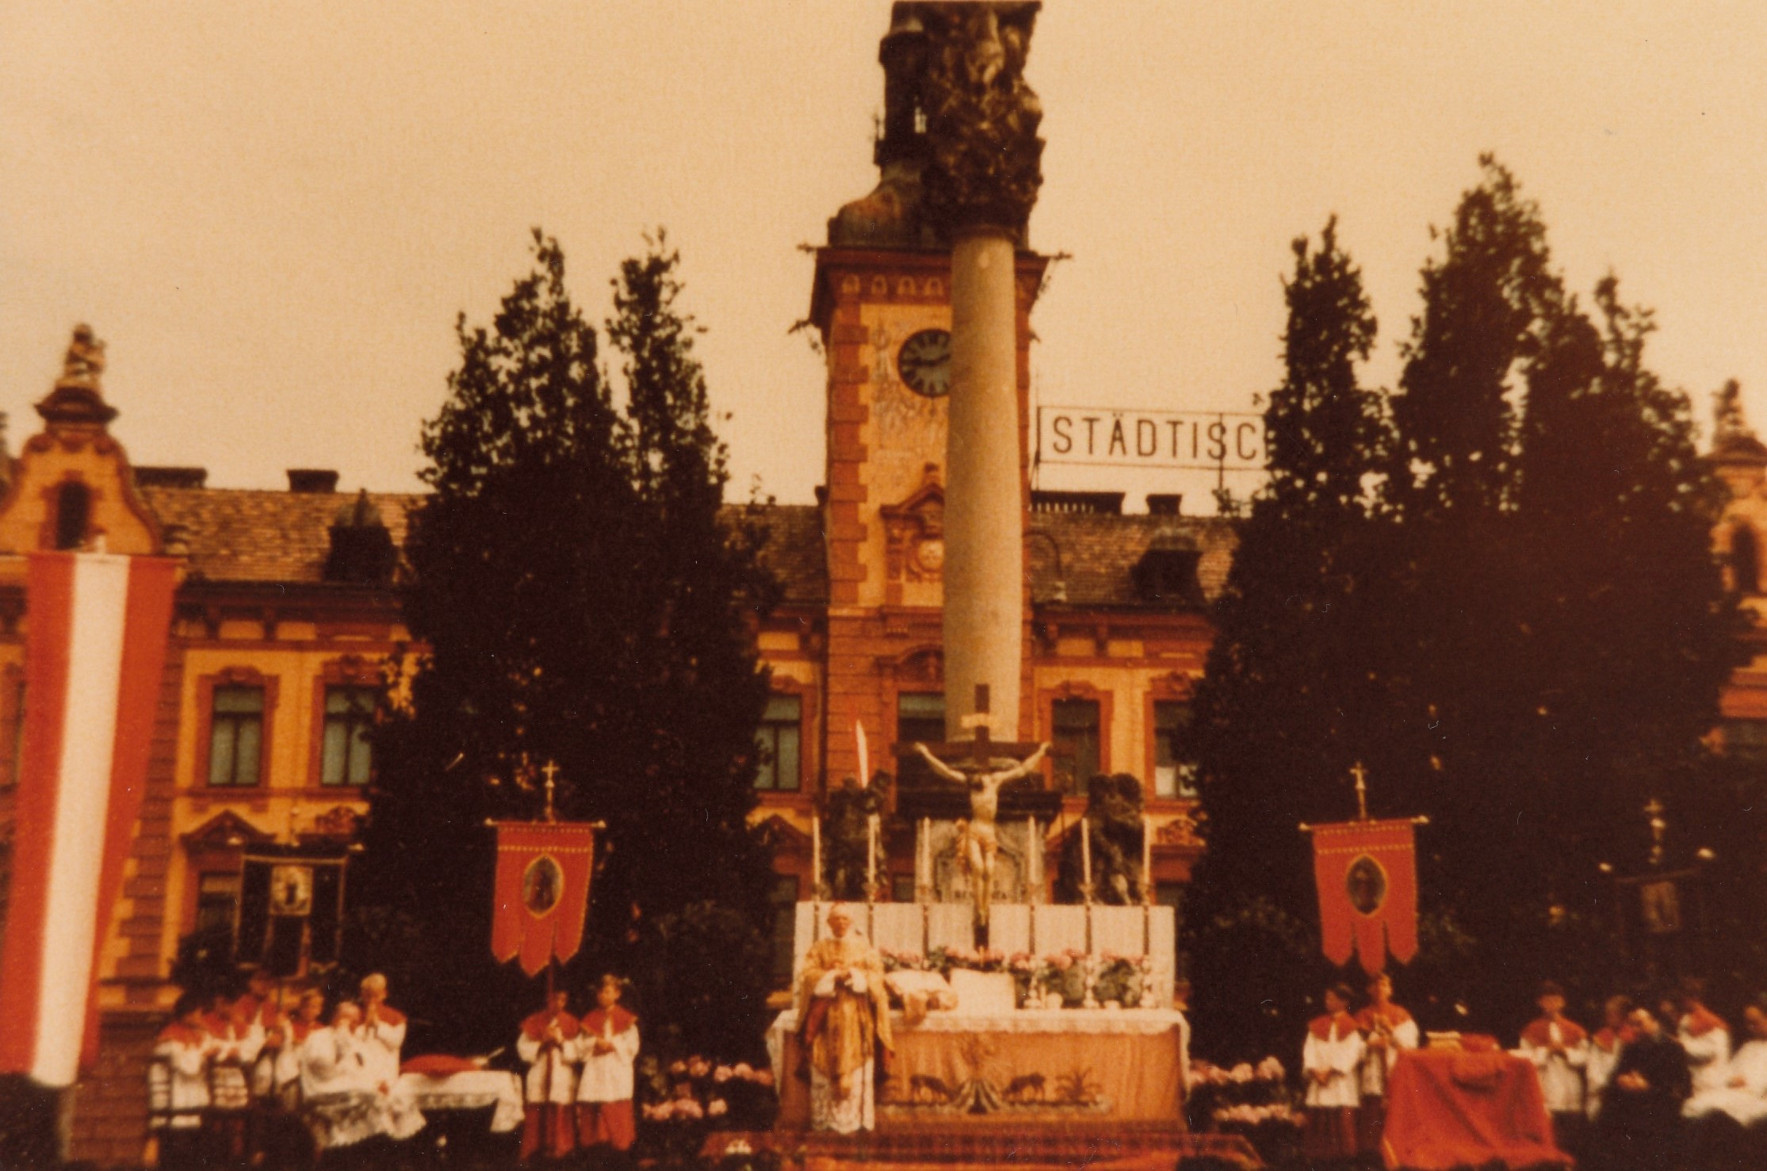 Vereinzelt existieren auch Farbfotos von diesem Festtag, wie dieses dass den Altar vor der Dreifaltigkeitssäule zeigt